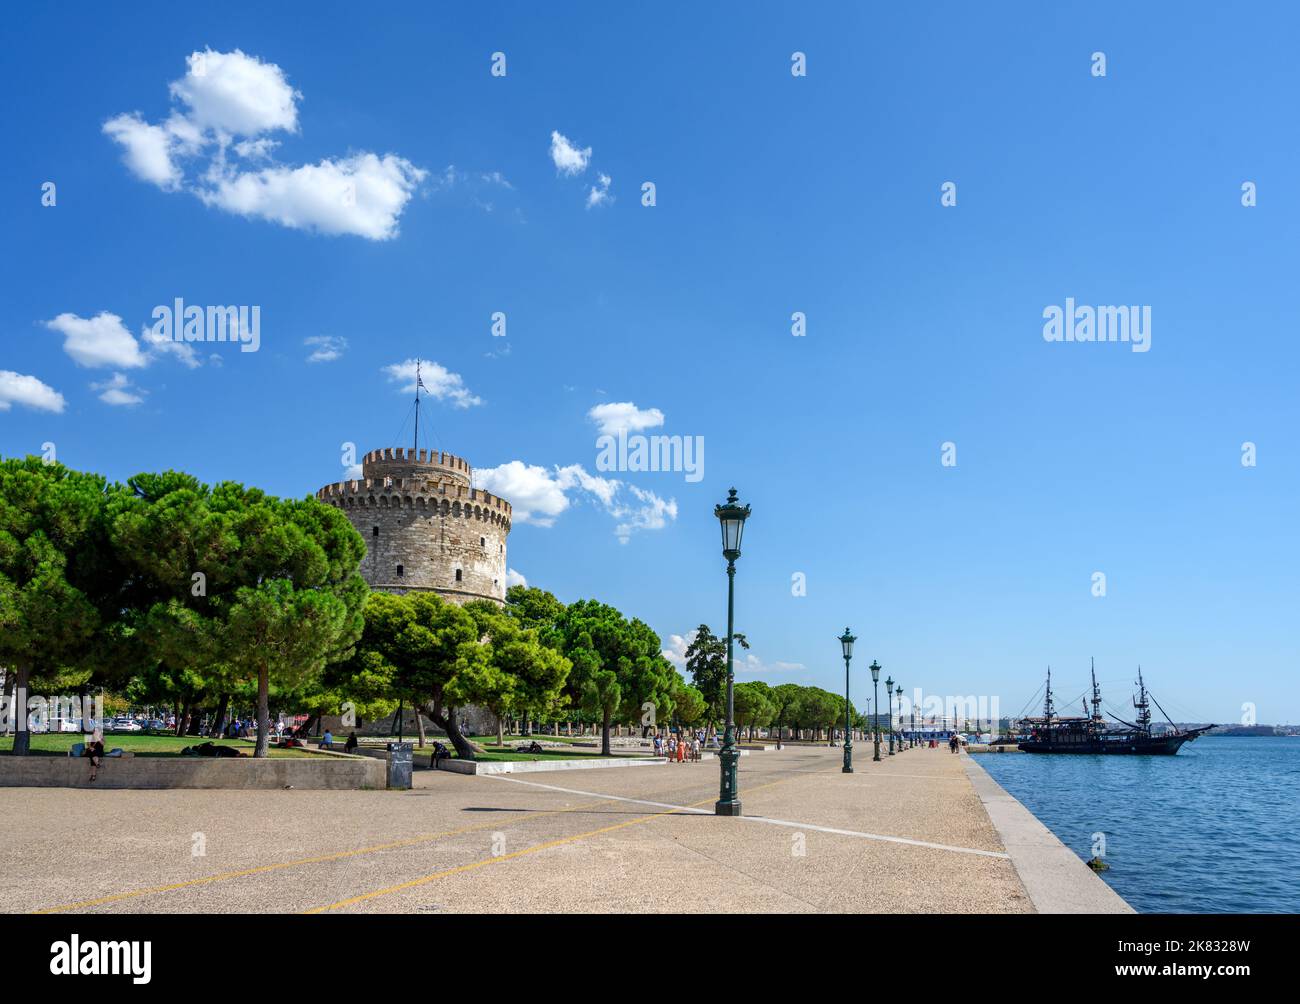 Seafront promenade and the White Tower (Lefkos Pyrgos), Nikis Avenue, Thessaloniki, Macedonia, Greece Stock Photo